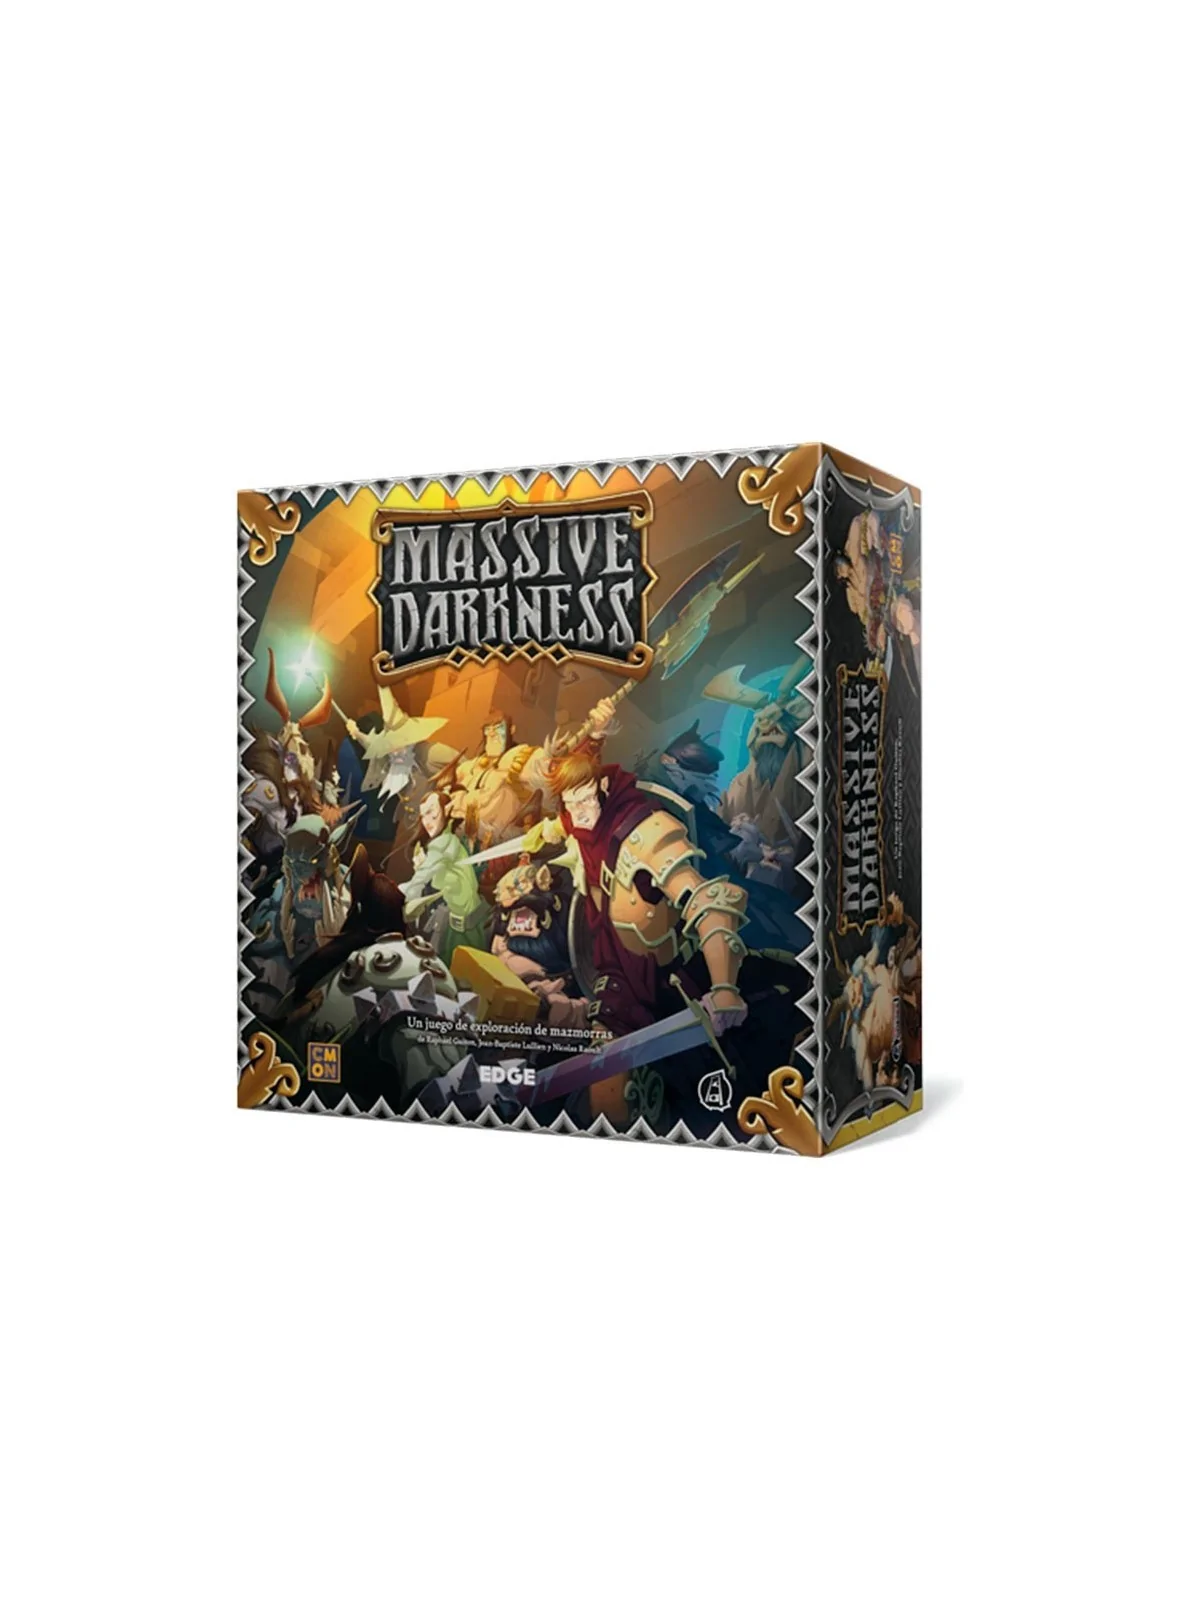 Comprar Massive Darkness barato al mejor precio 107,95 € de CMON